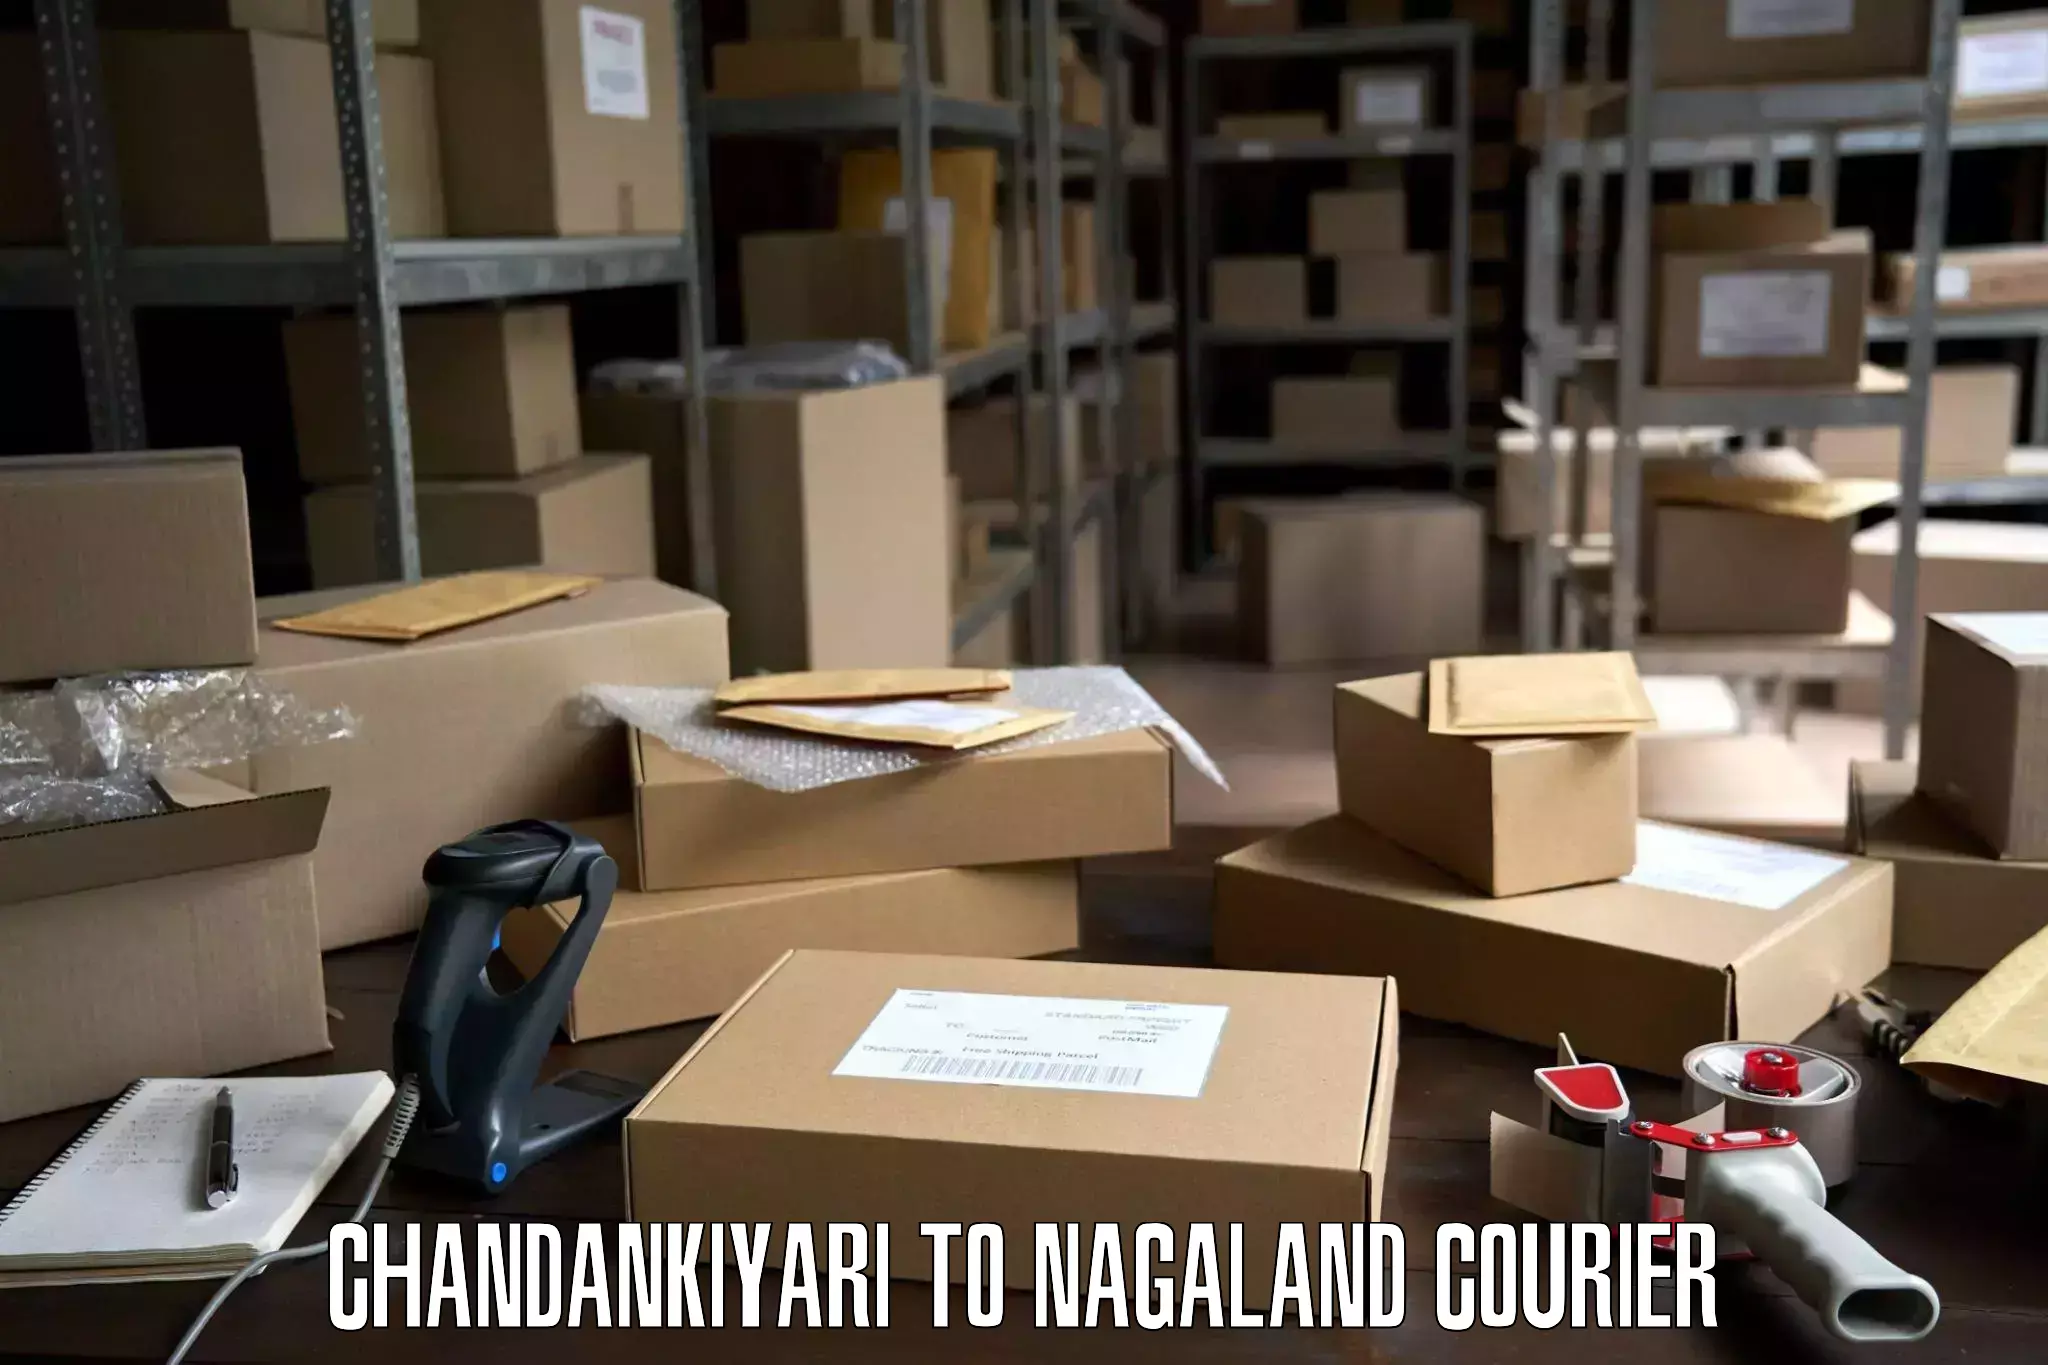 Professional furniture movers Chandankiyari to Chumukedima